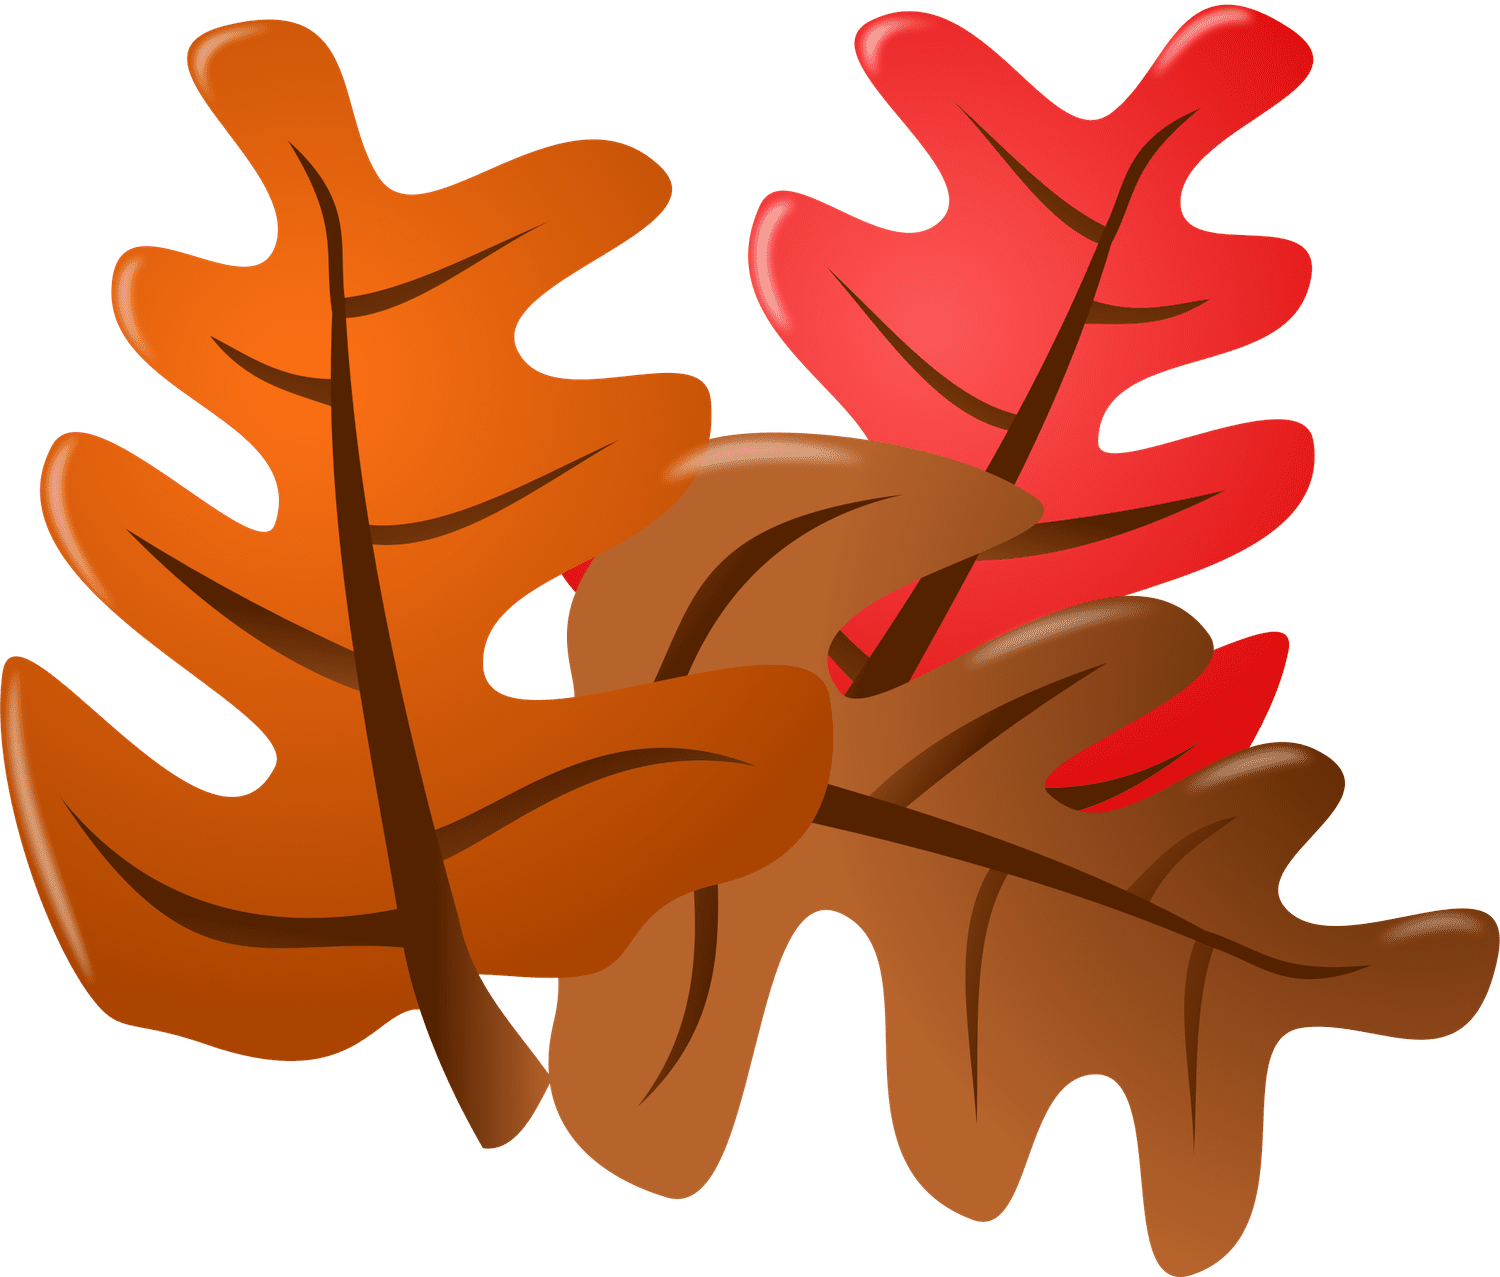 橙色、红色和棕色的落叶